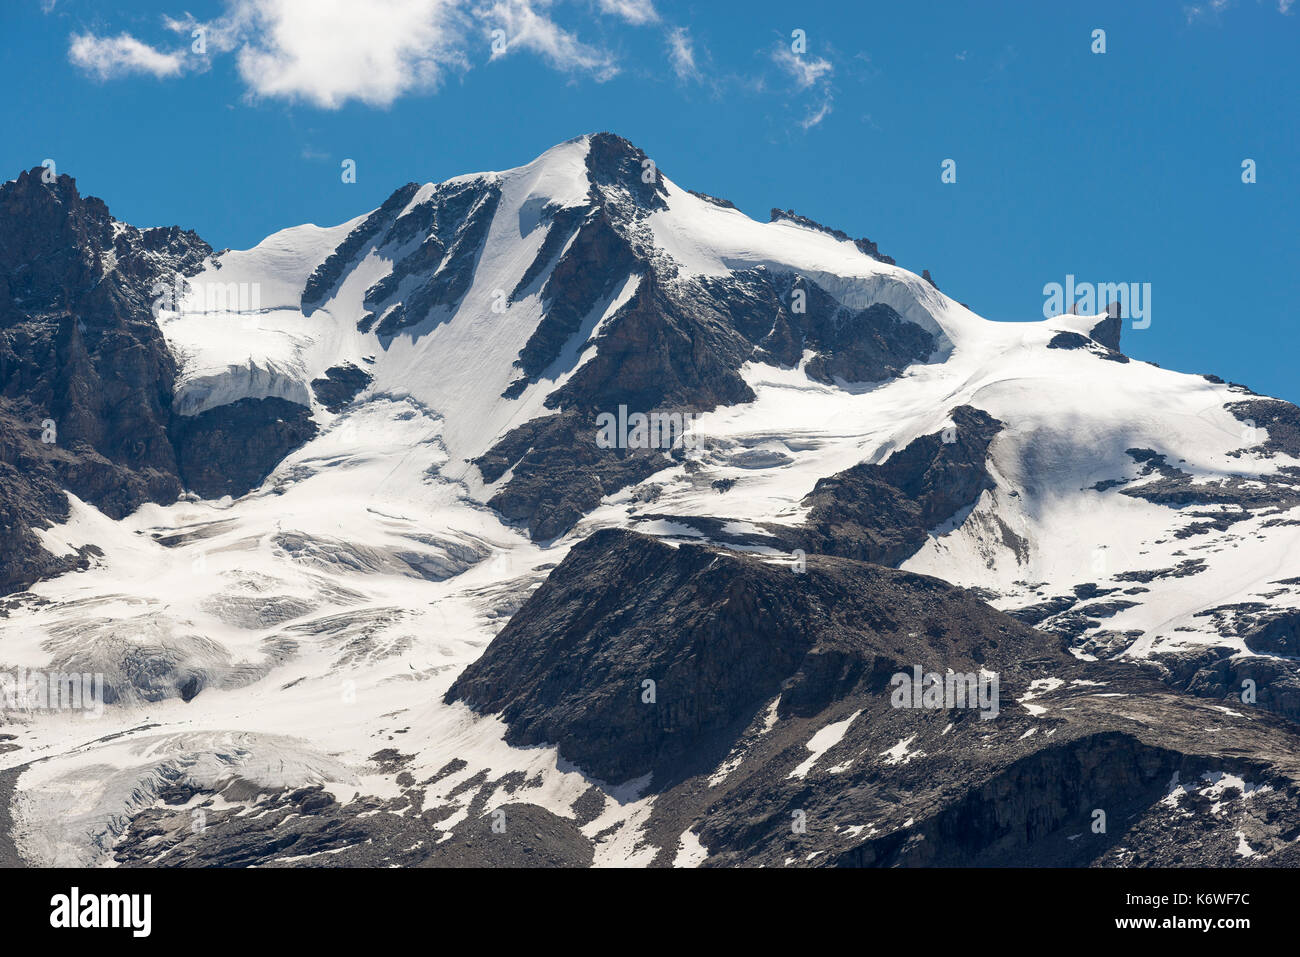 Main peak Gran Paradiso, 4061 m, Massif Gran Paradiso, Valsavarenche Valley, Gran Paradiso, Alps, Aosta Valley, Italy Stock Photo